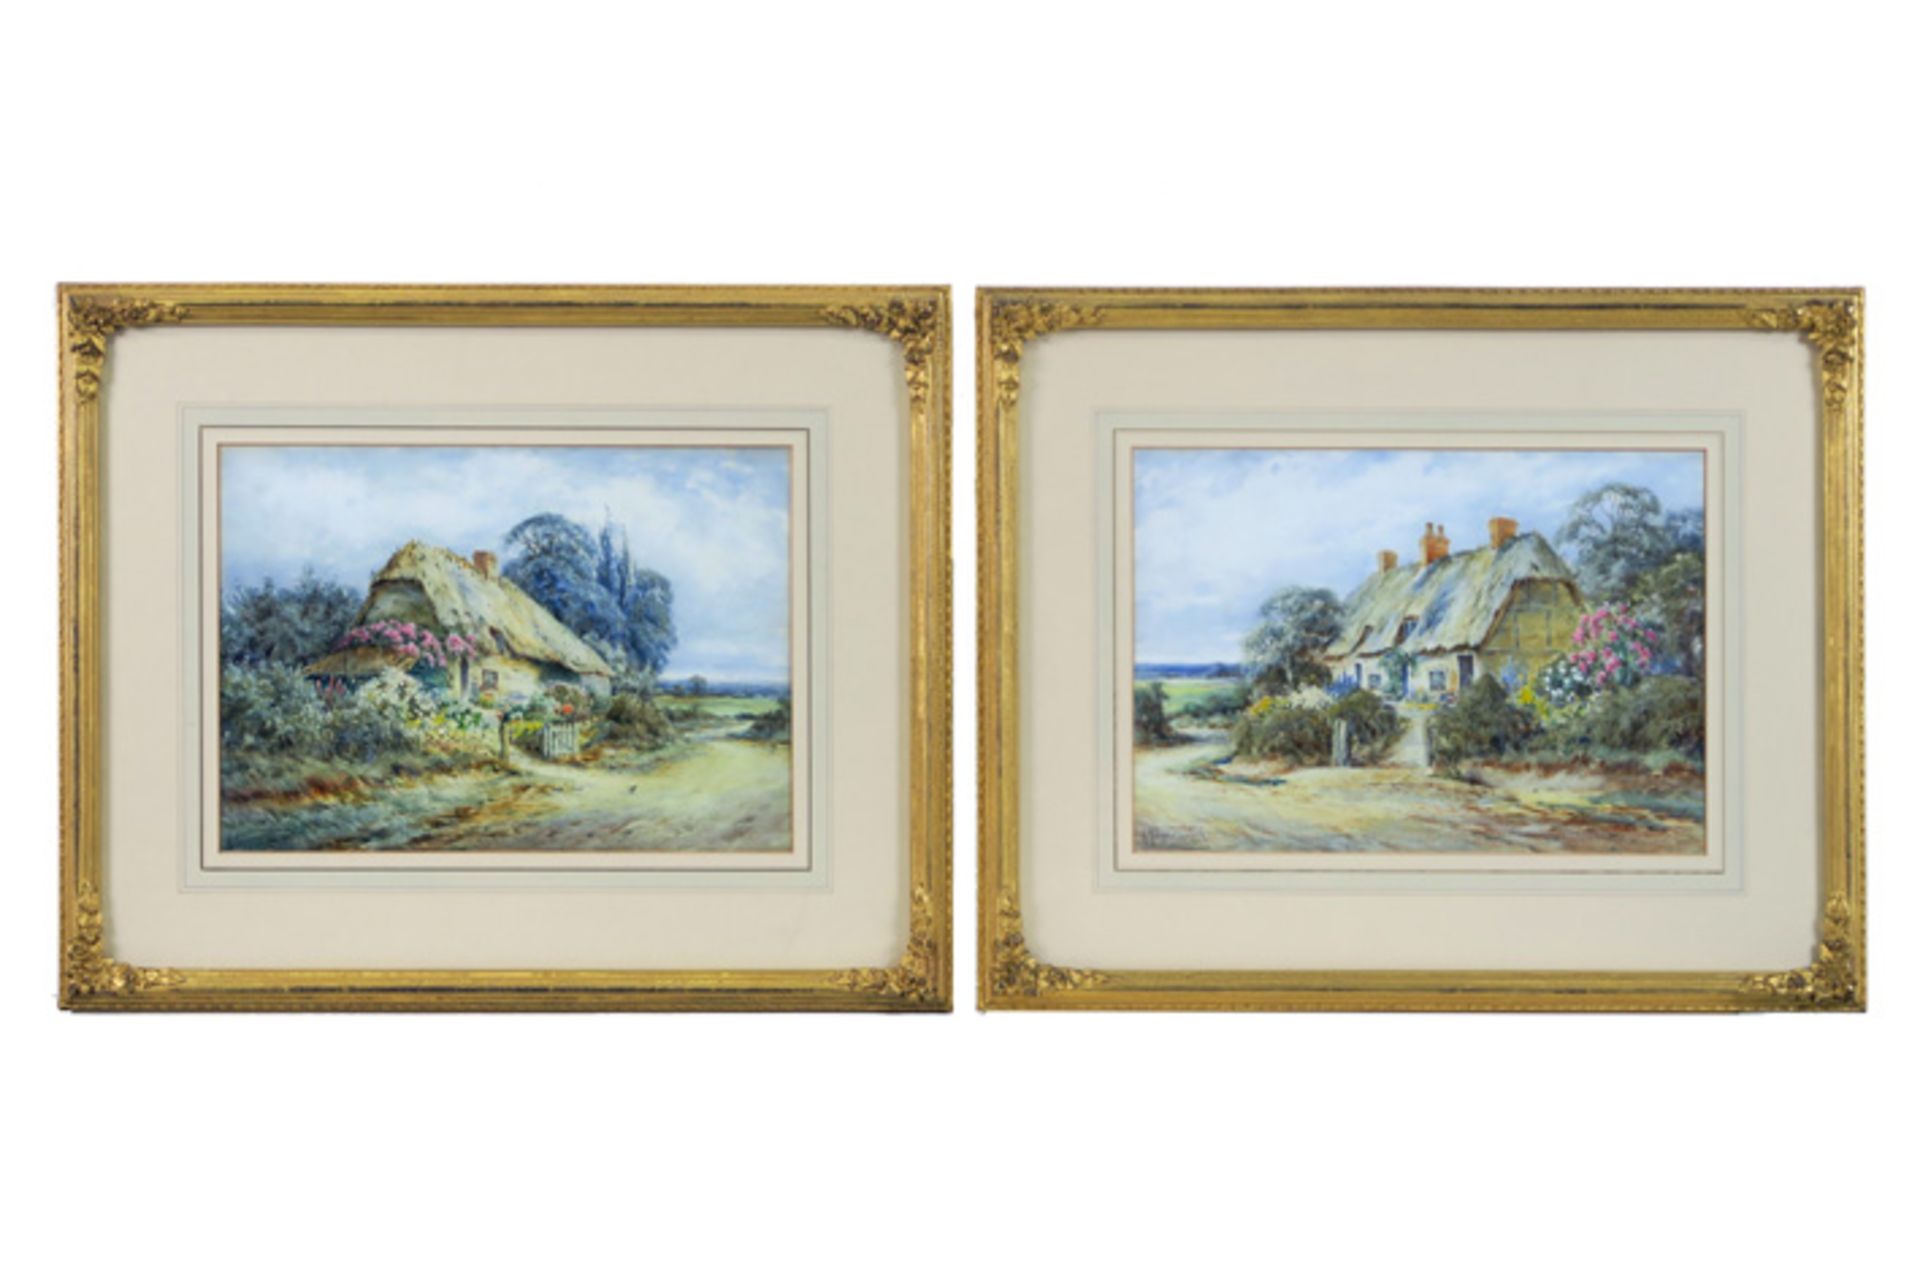 MOLYNEUX STANNARD ALEXANDER (1898 - 1975) pendant aquarellen : "Zicht van een cottage" - 24 x 34